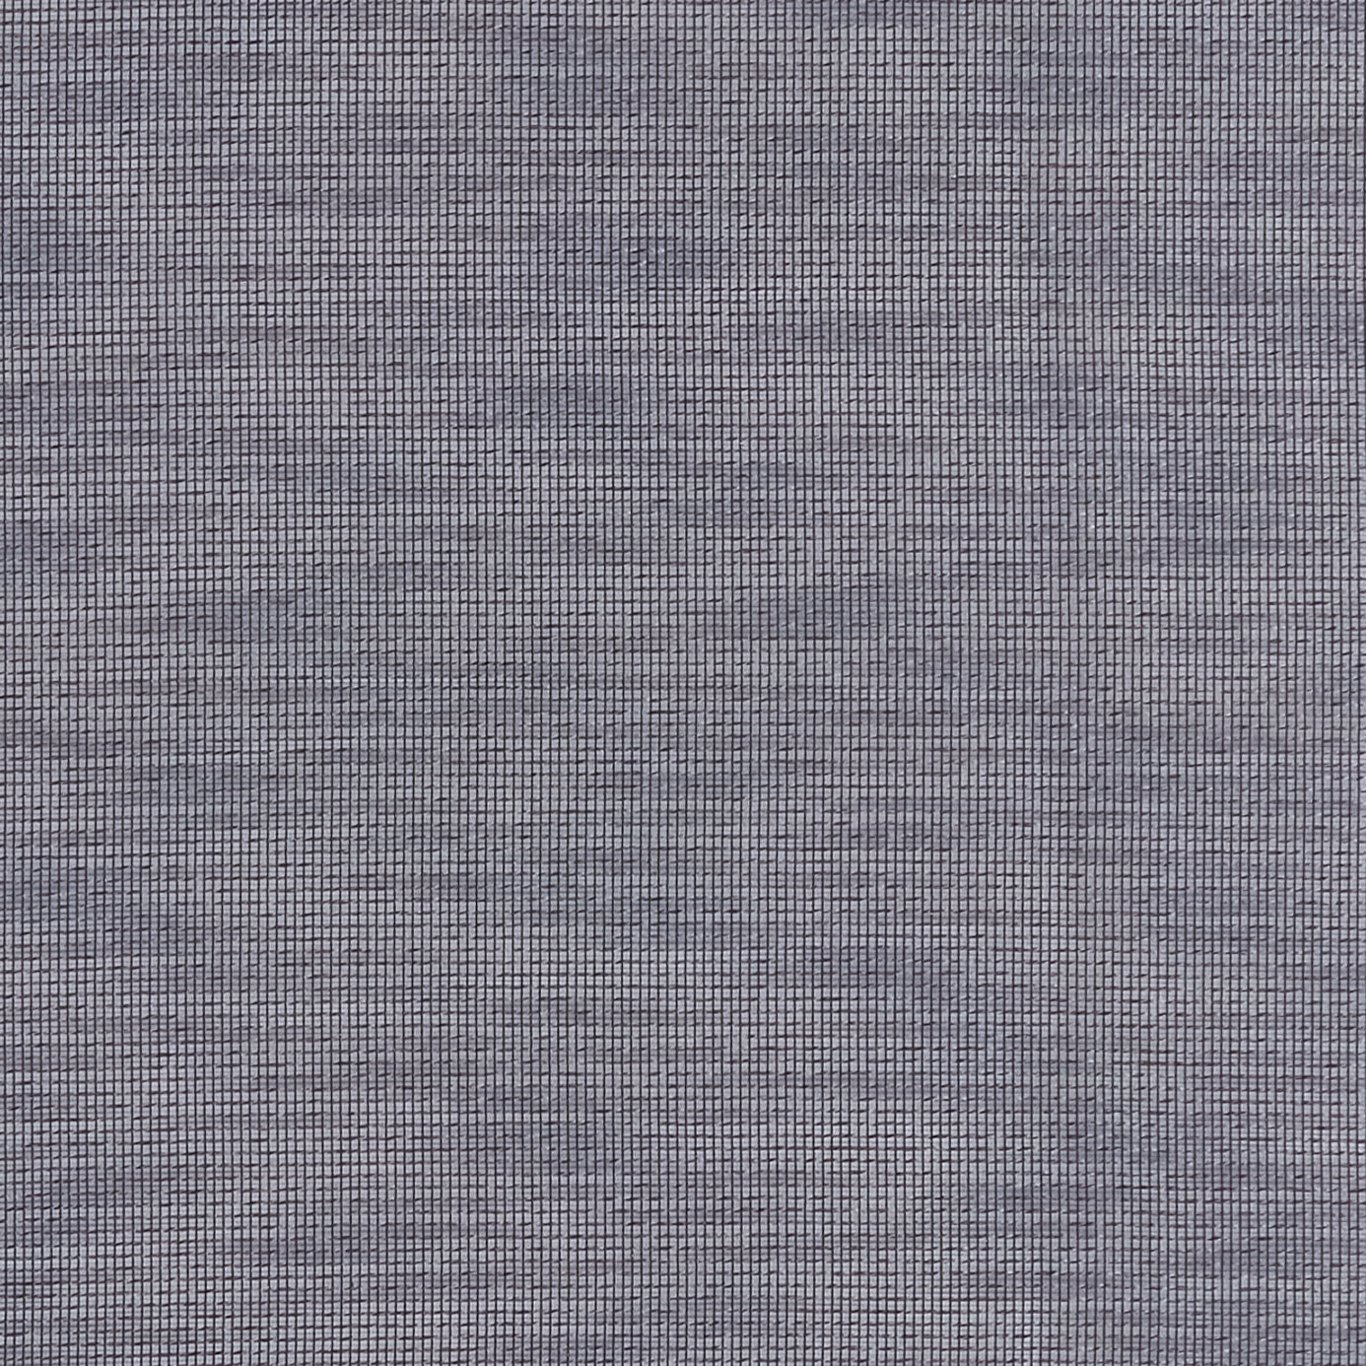 Maddox Denim Fabric by CNC